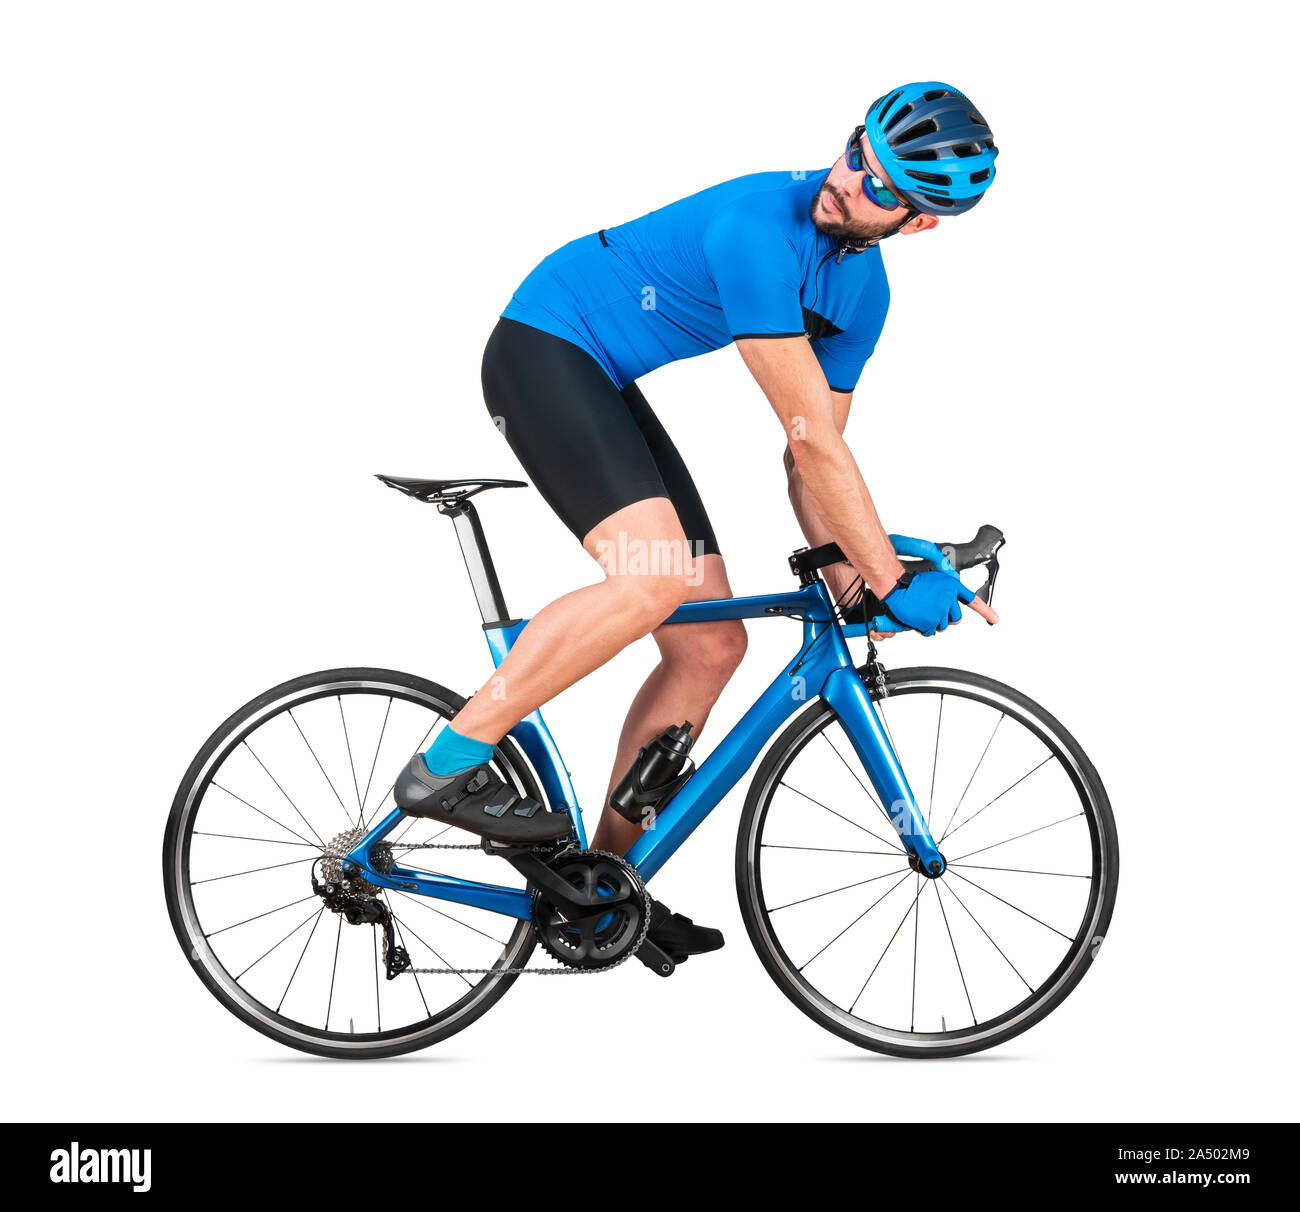 Professionelle Fahrrad road racing Radfahrer racer Blau Sport Jersey auf Light Carbon race zurück schauen hinter. sport training Radfahren Konzept isolat Stockfoto